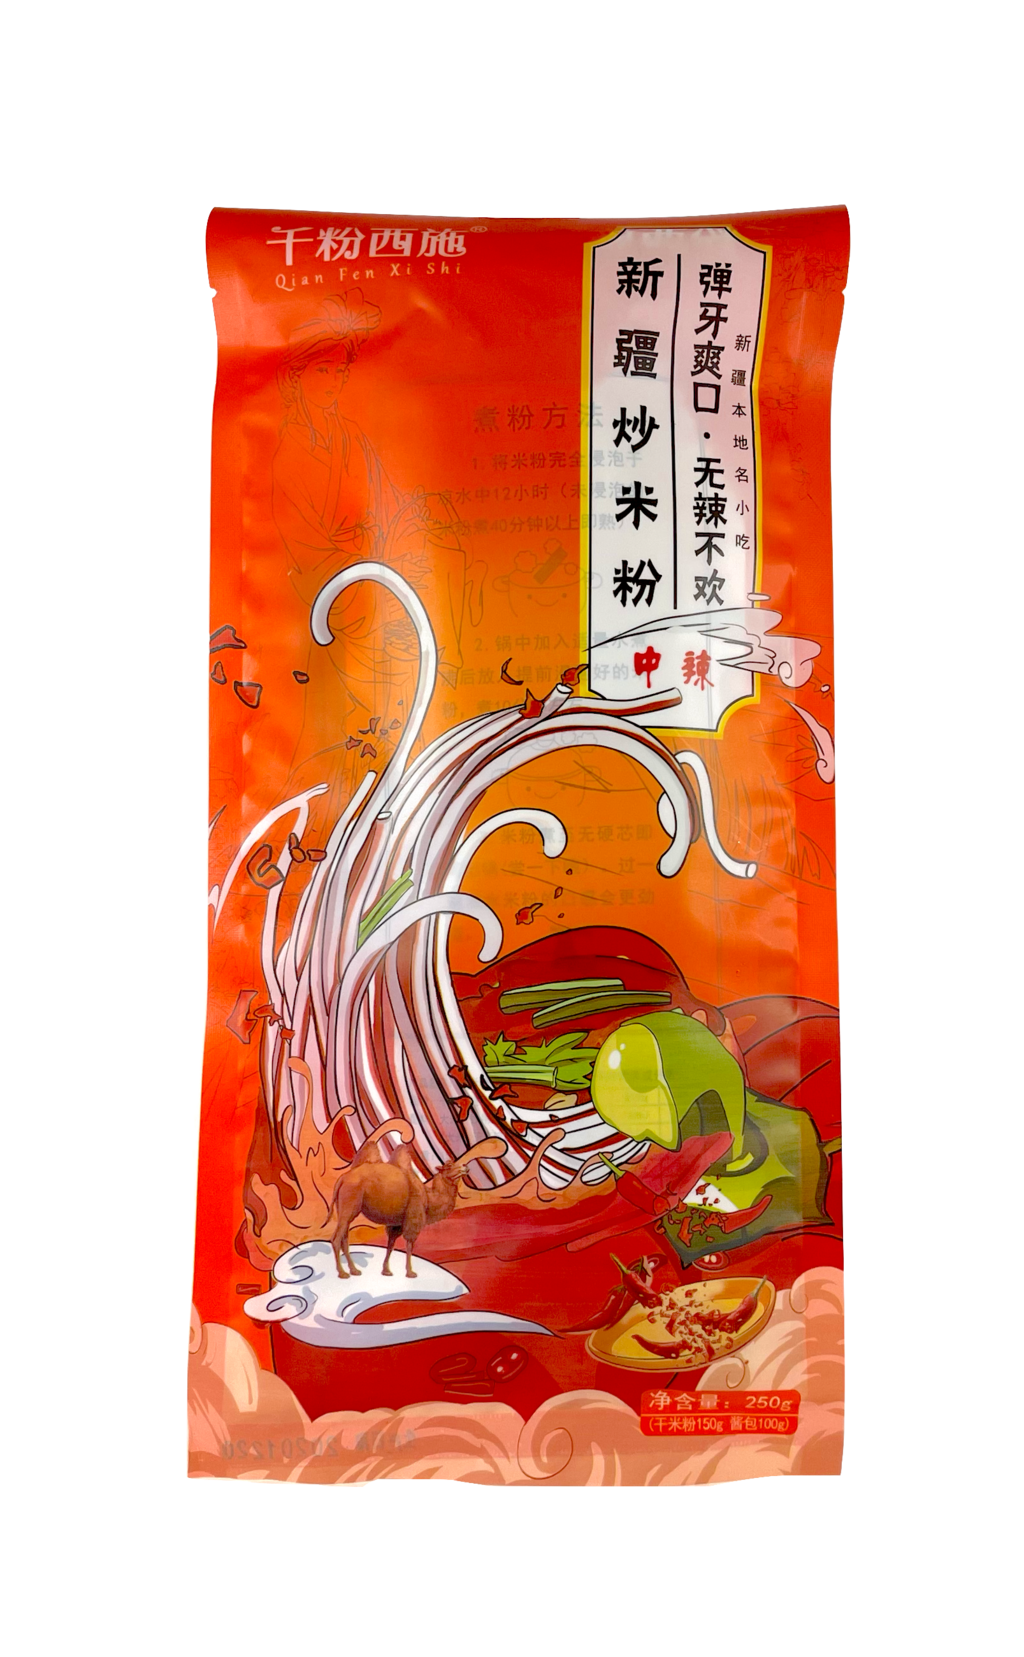 Rice Noodles With Medium Chili Flavour 250g Zhong La-Qian Fen Xi Shi China